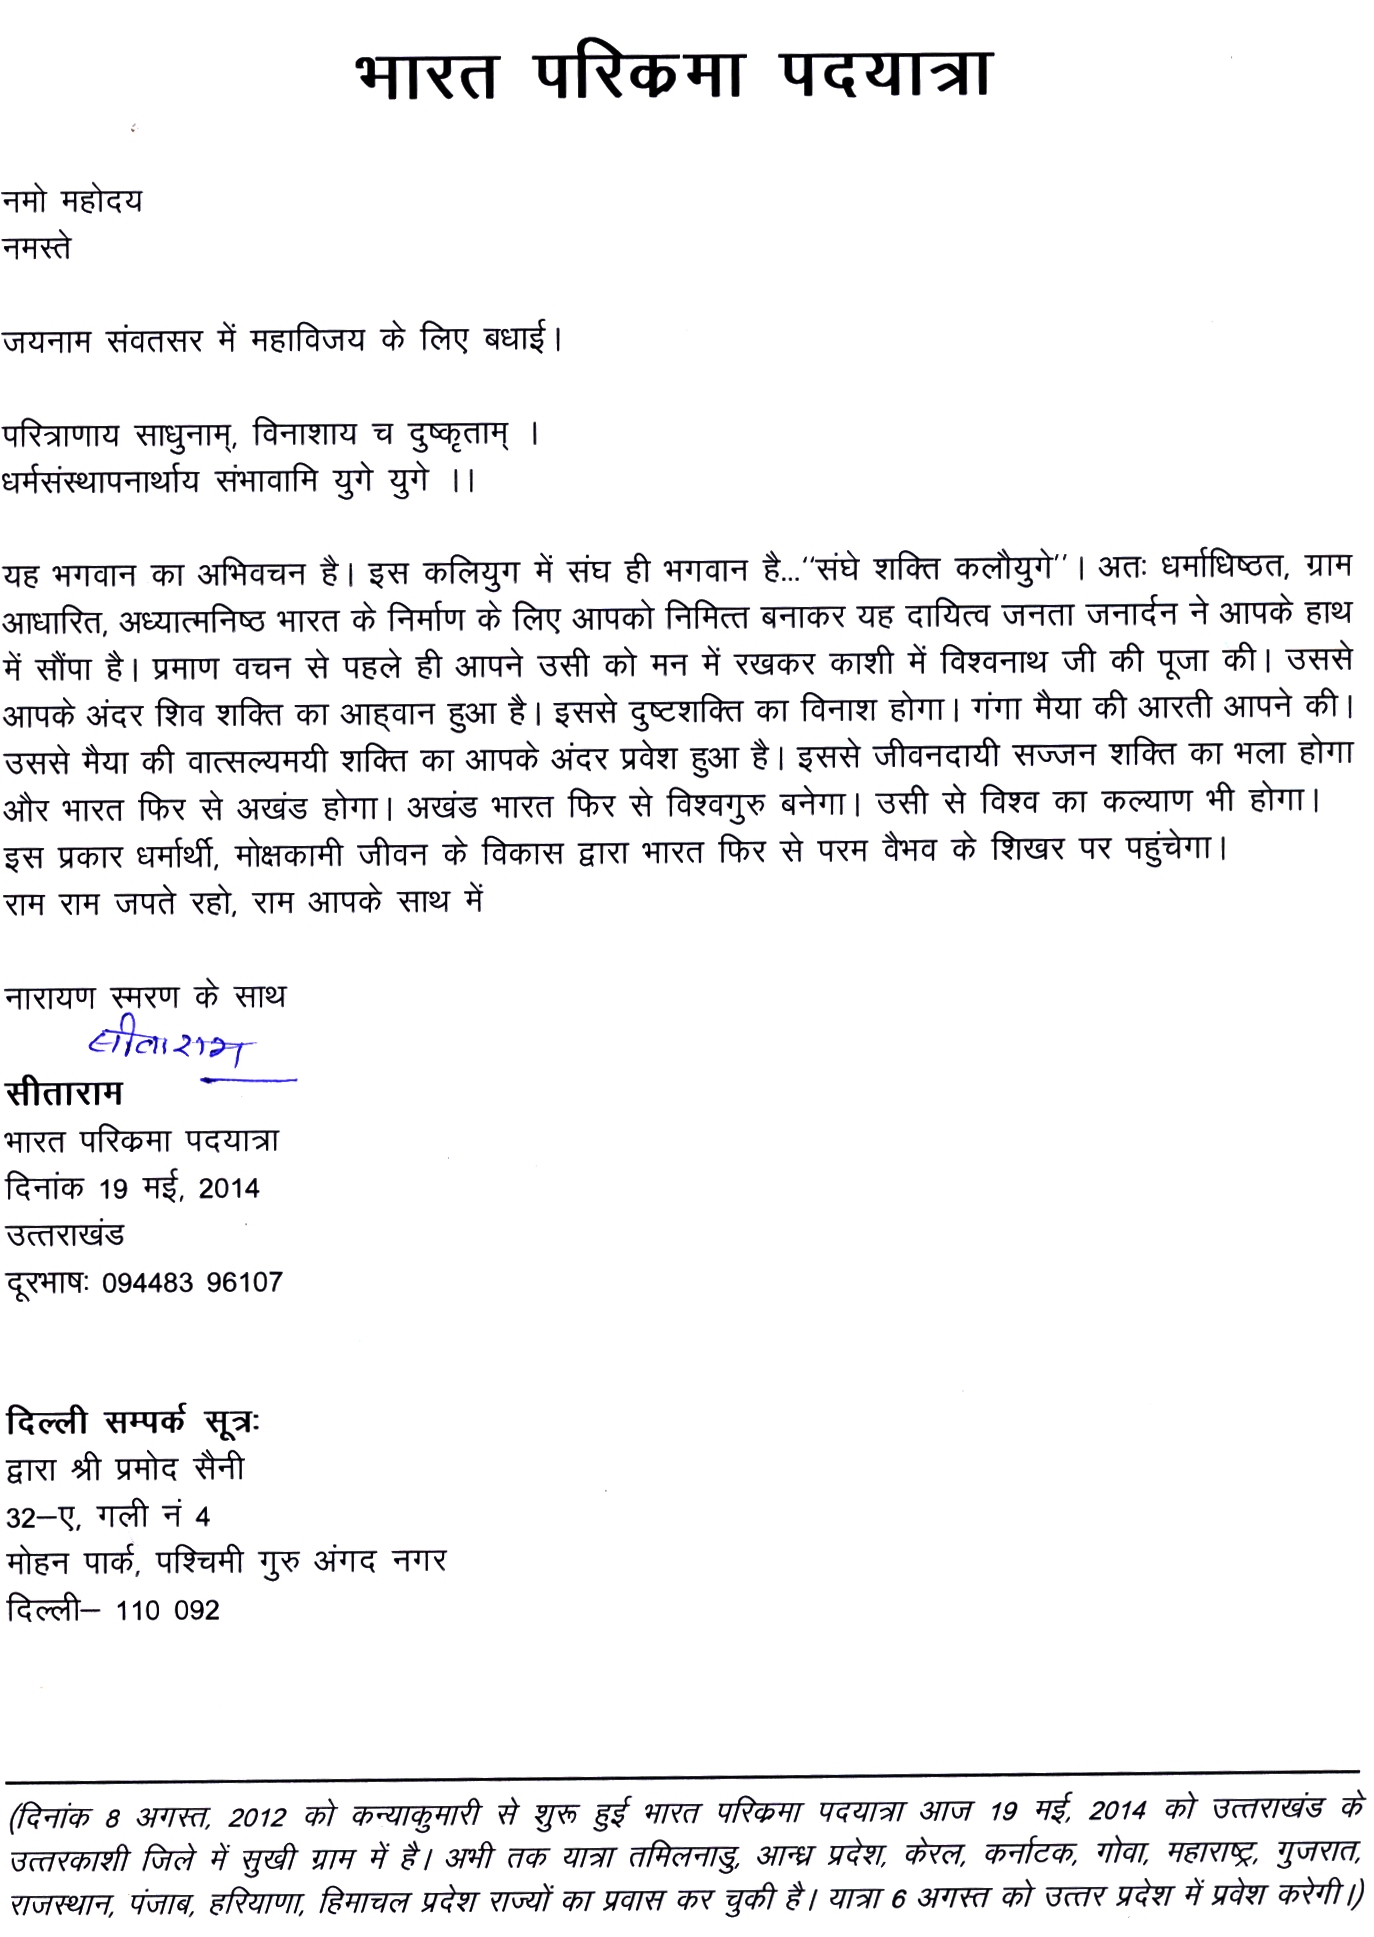 Sitarama Kedilaya's letter to Prime Minister Narendra Modi May 28-2014 